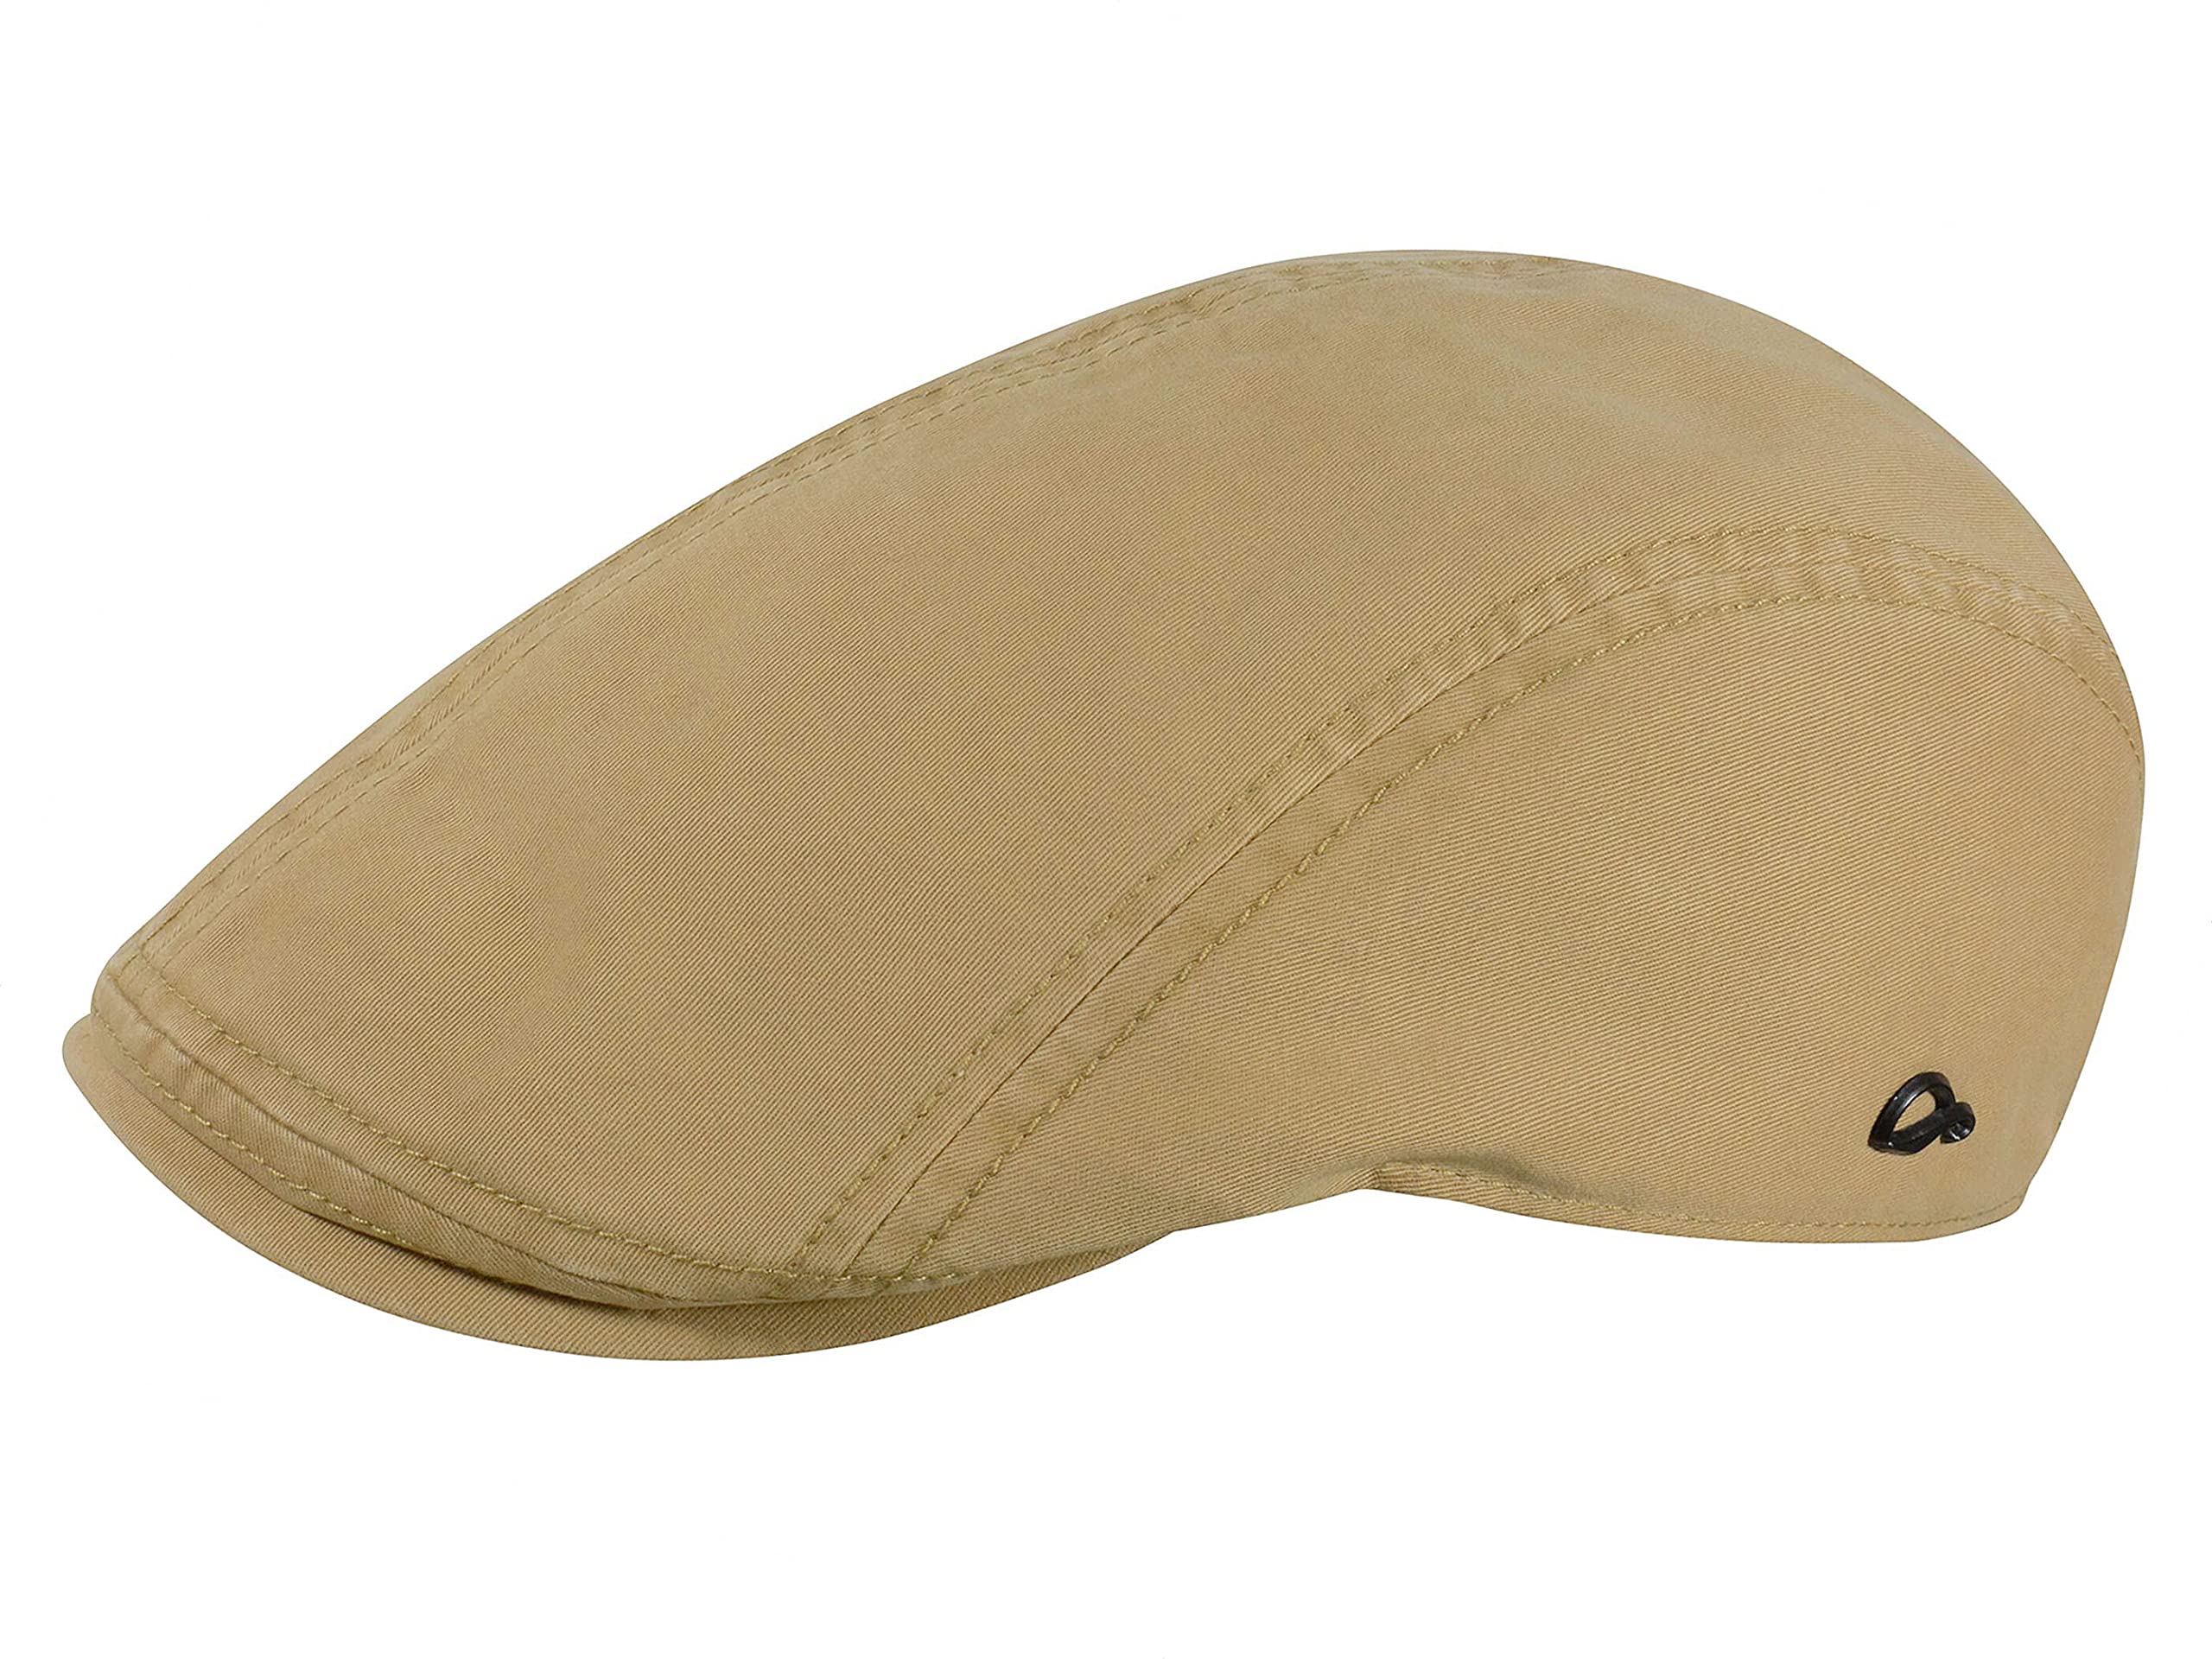 Göttmann Orlando Sportmütze mit UV-Schutz aus Baumwolle - Sand (39) - 58 cm